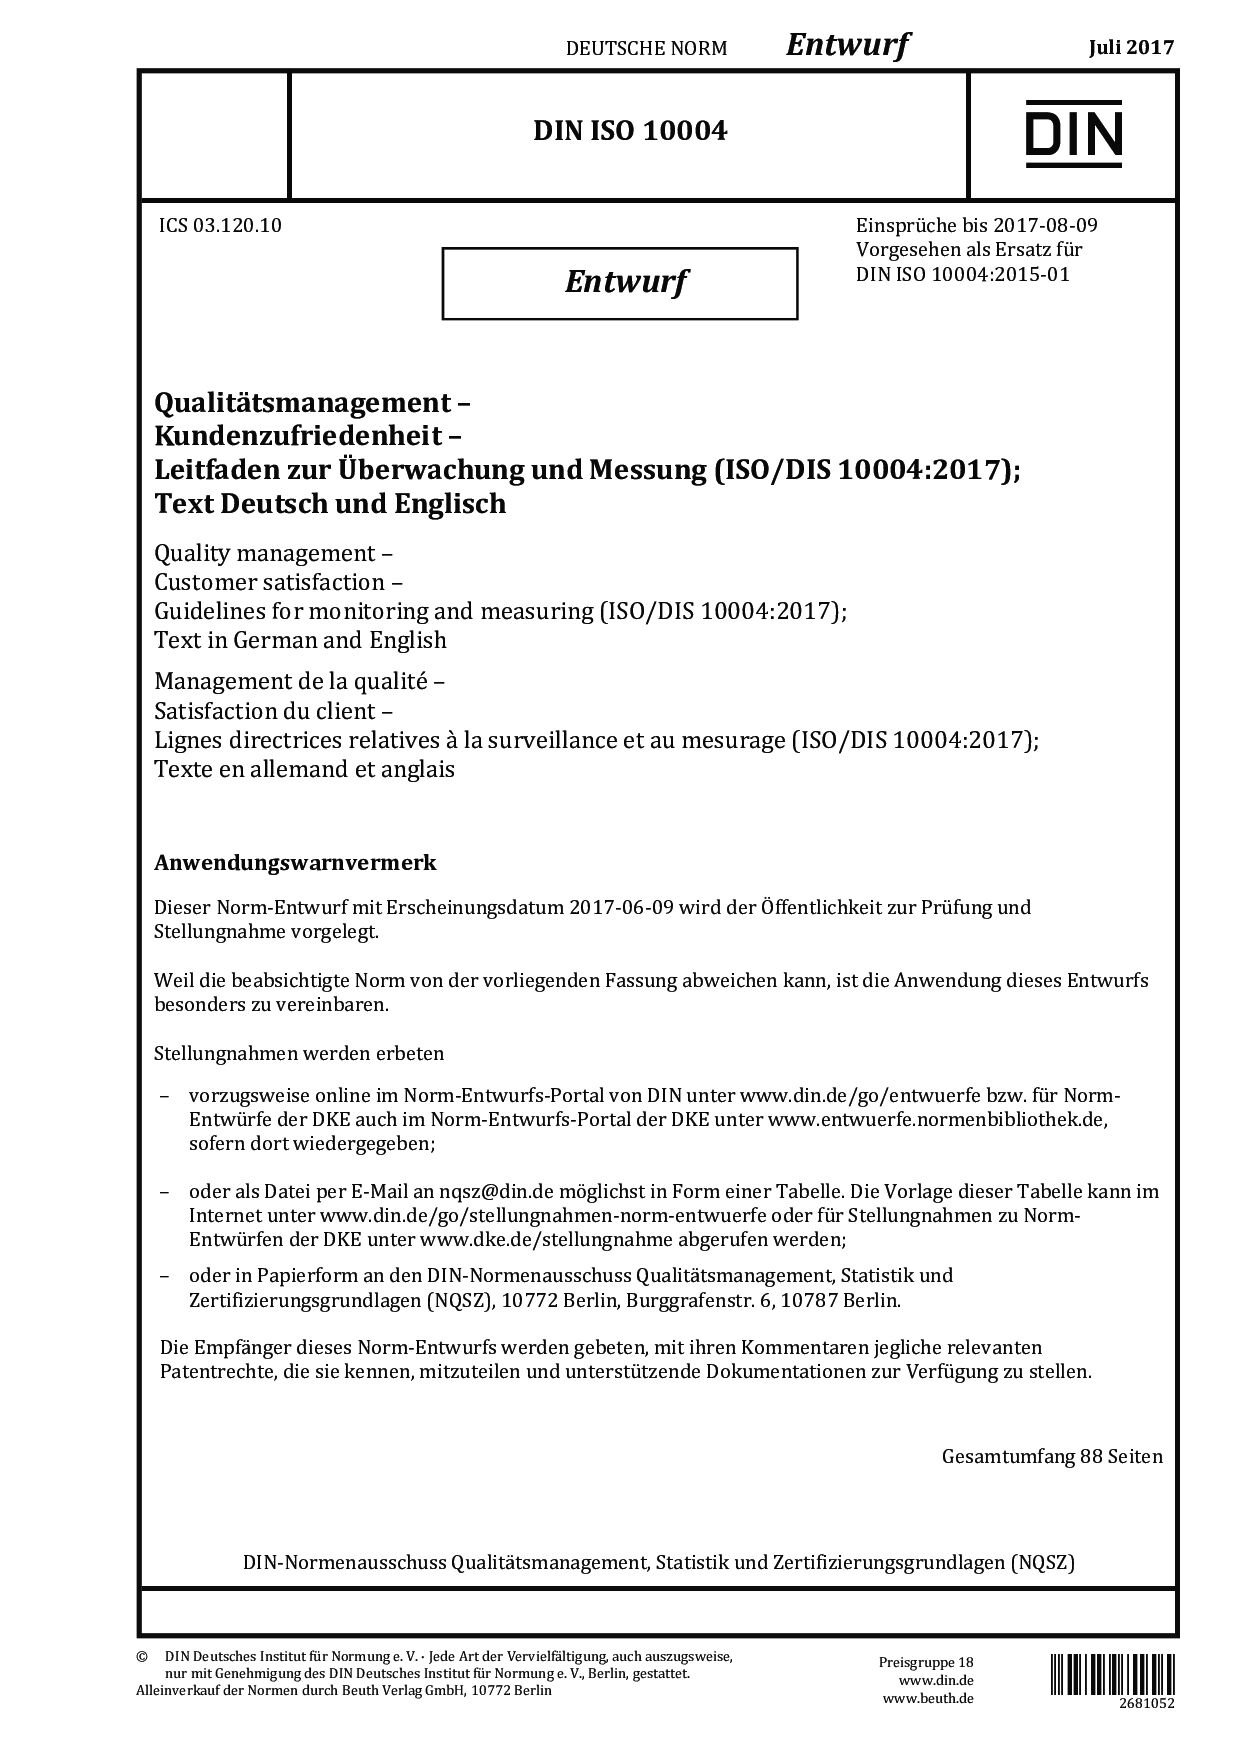 DIN ISO 10004 E:2017-07封面图